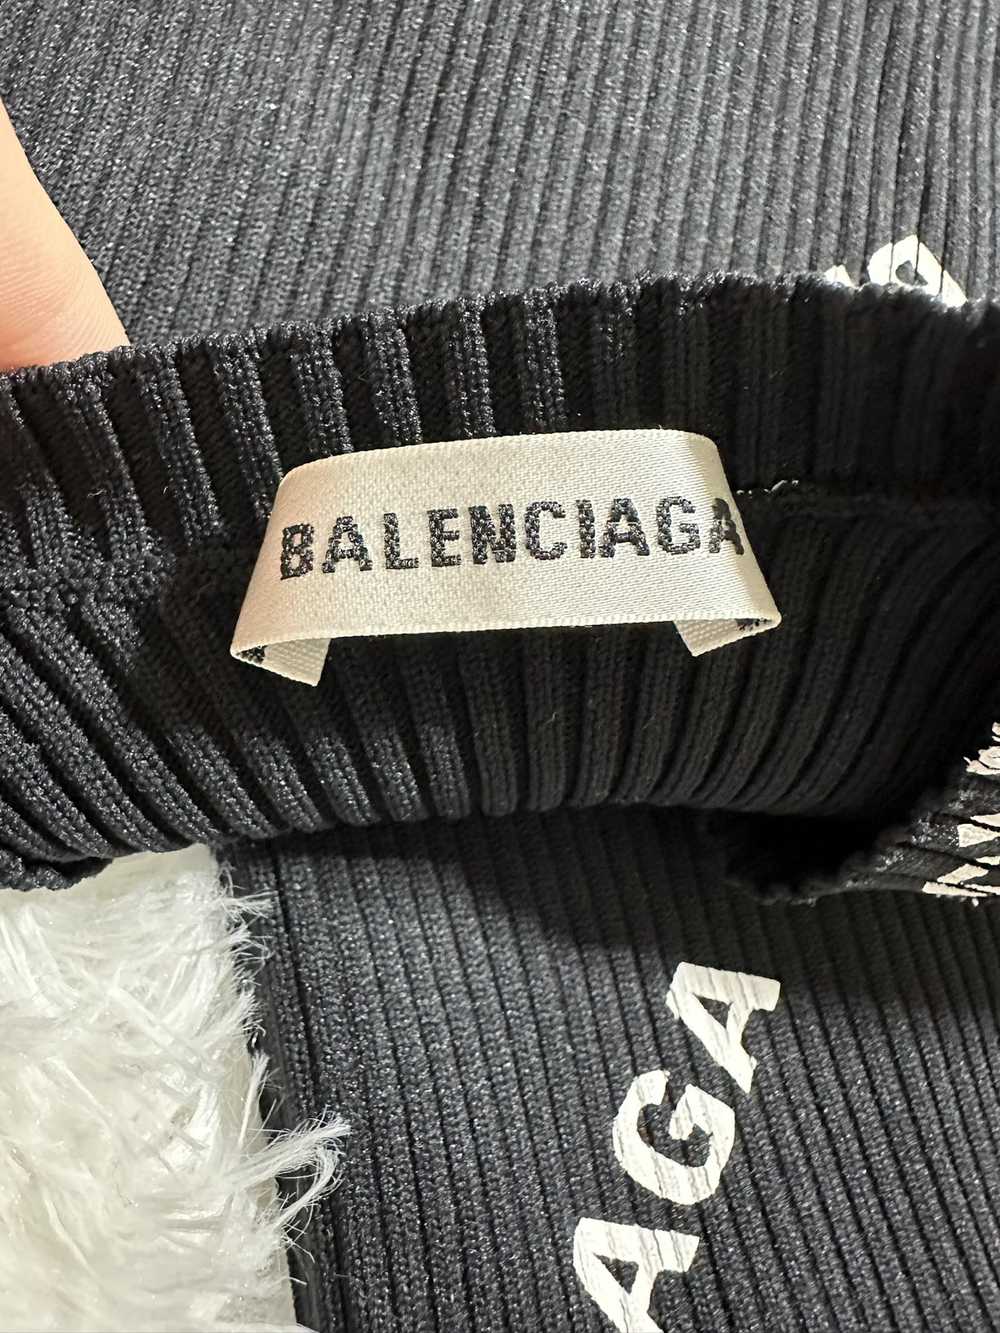 Balenciaga Balenciaga Top Long Sleeve Black and W… - image 4